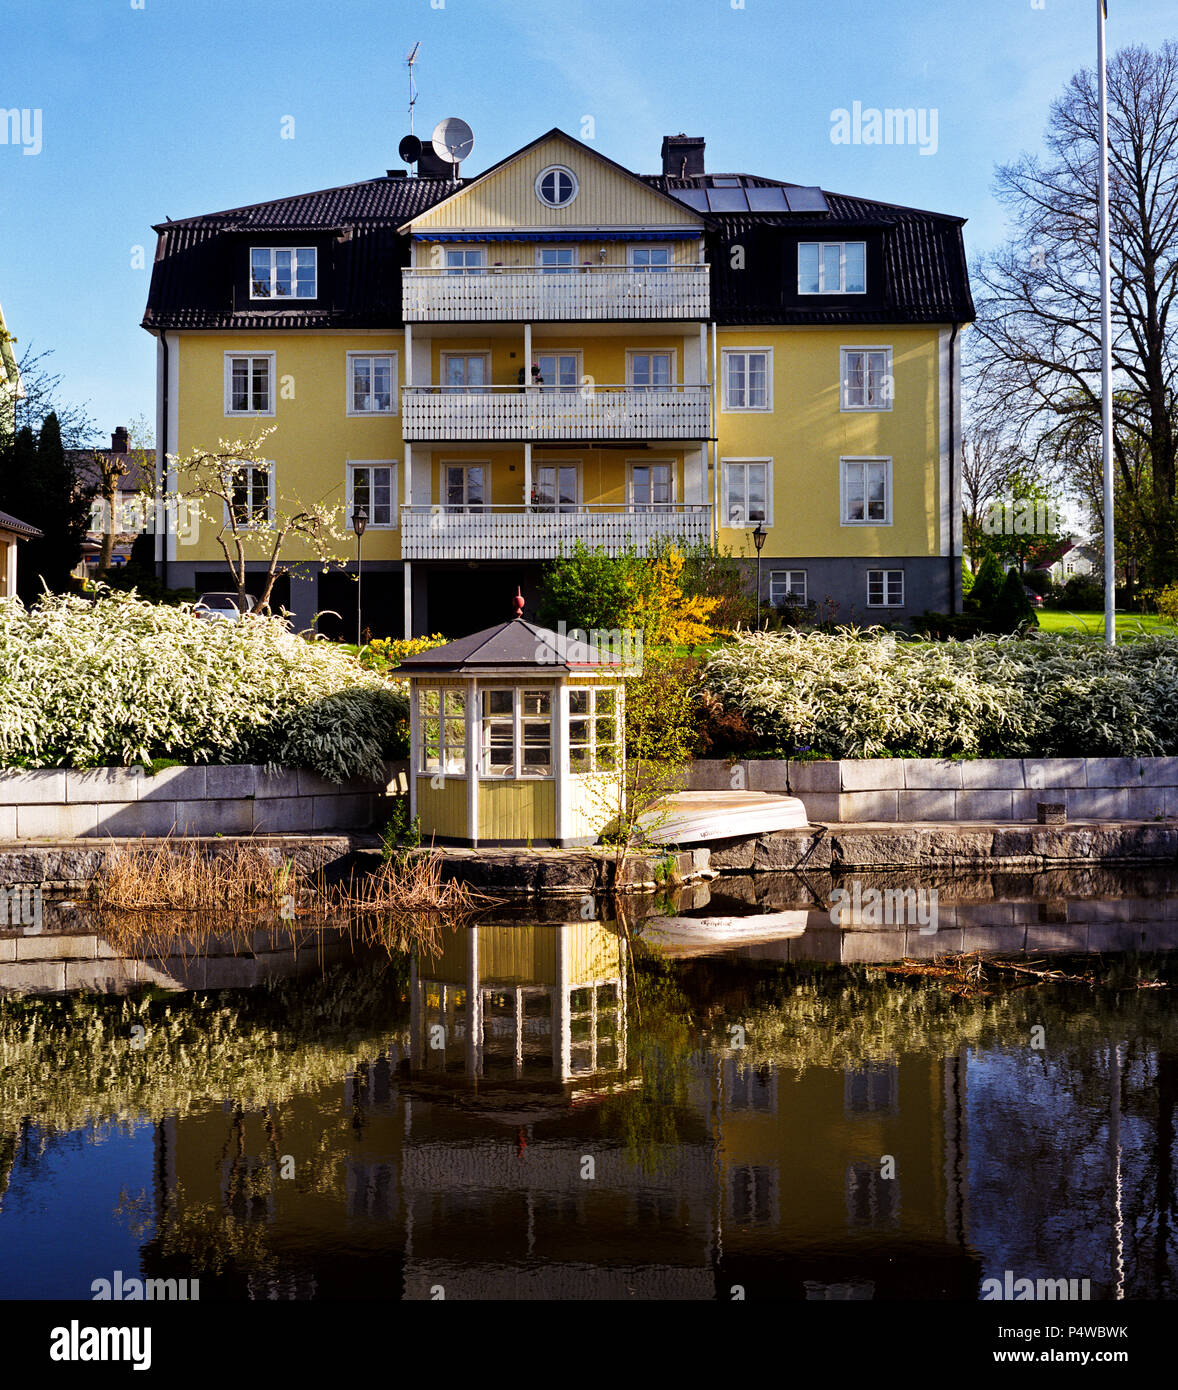 Le petit ruisseau qui traverse la ville de Norrtalje 50 miles au nord de Stockholm, photographié pendant trois saisons, hiver, printemps et automne. Banque D'Images